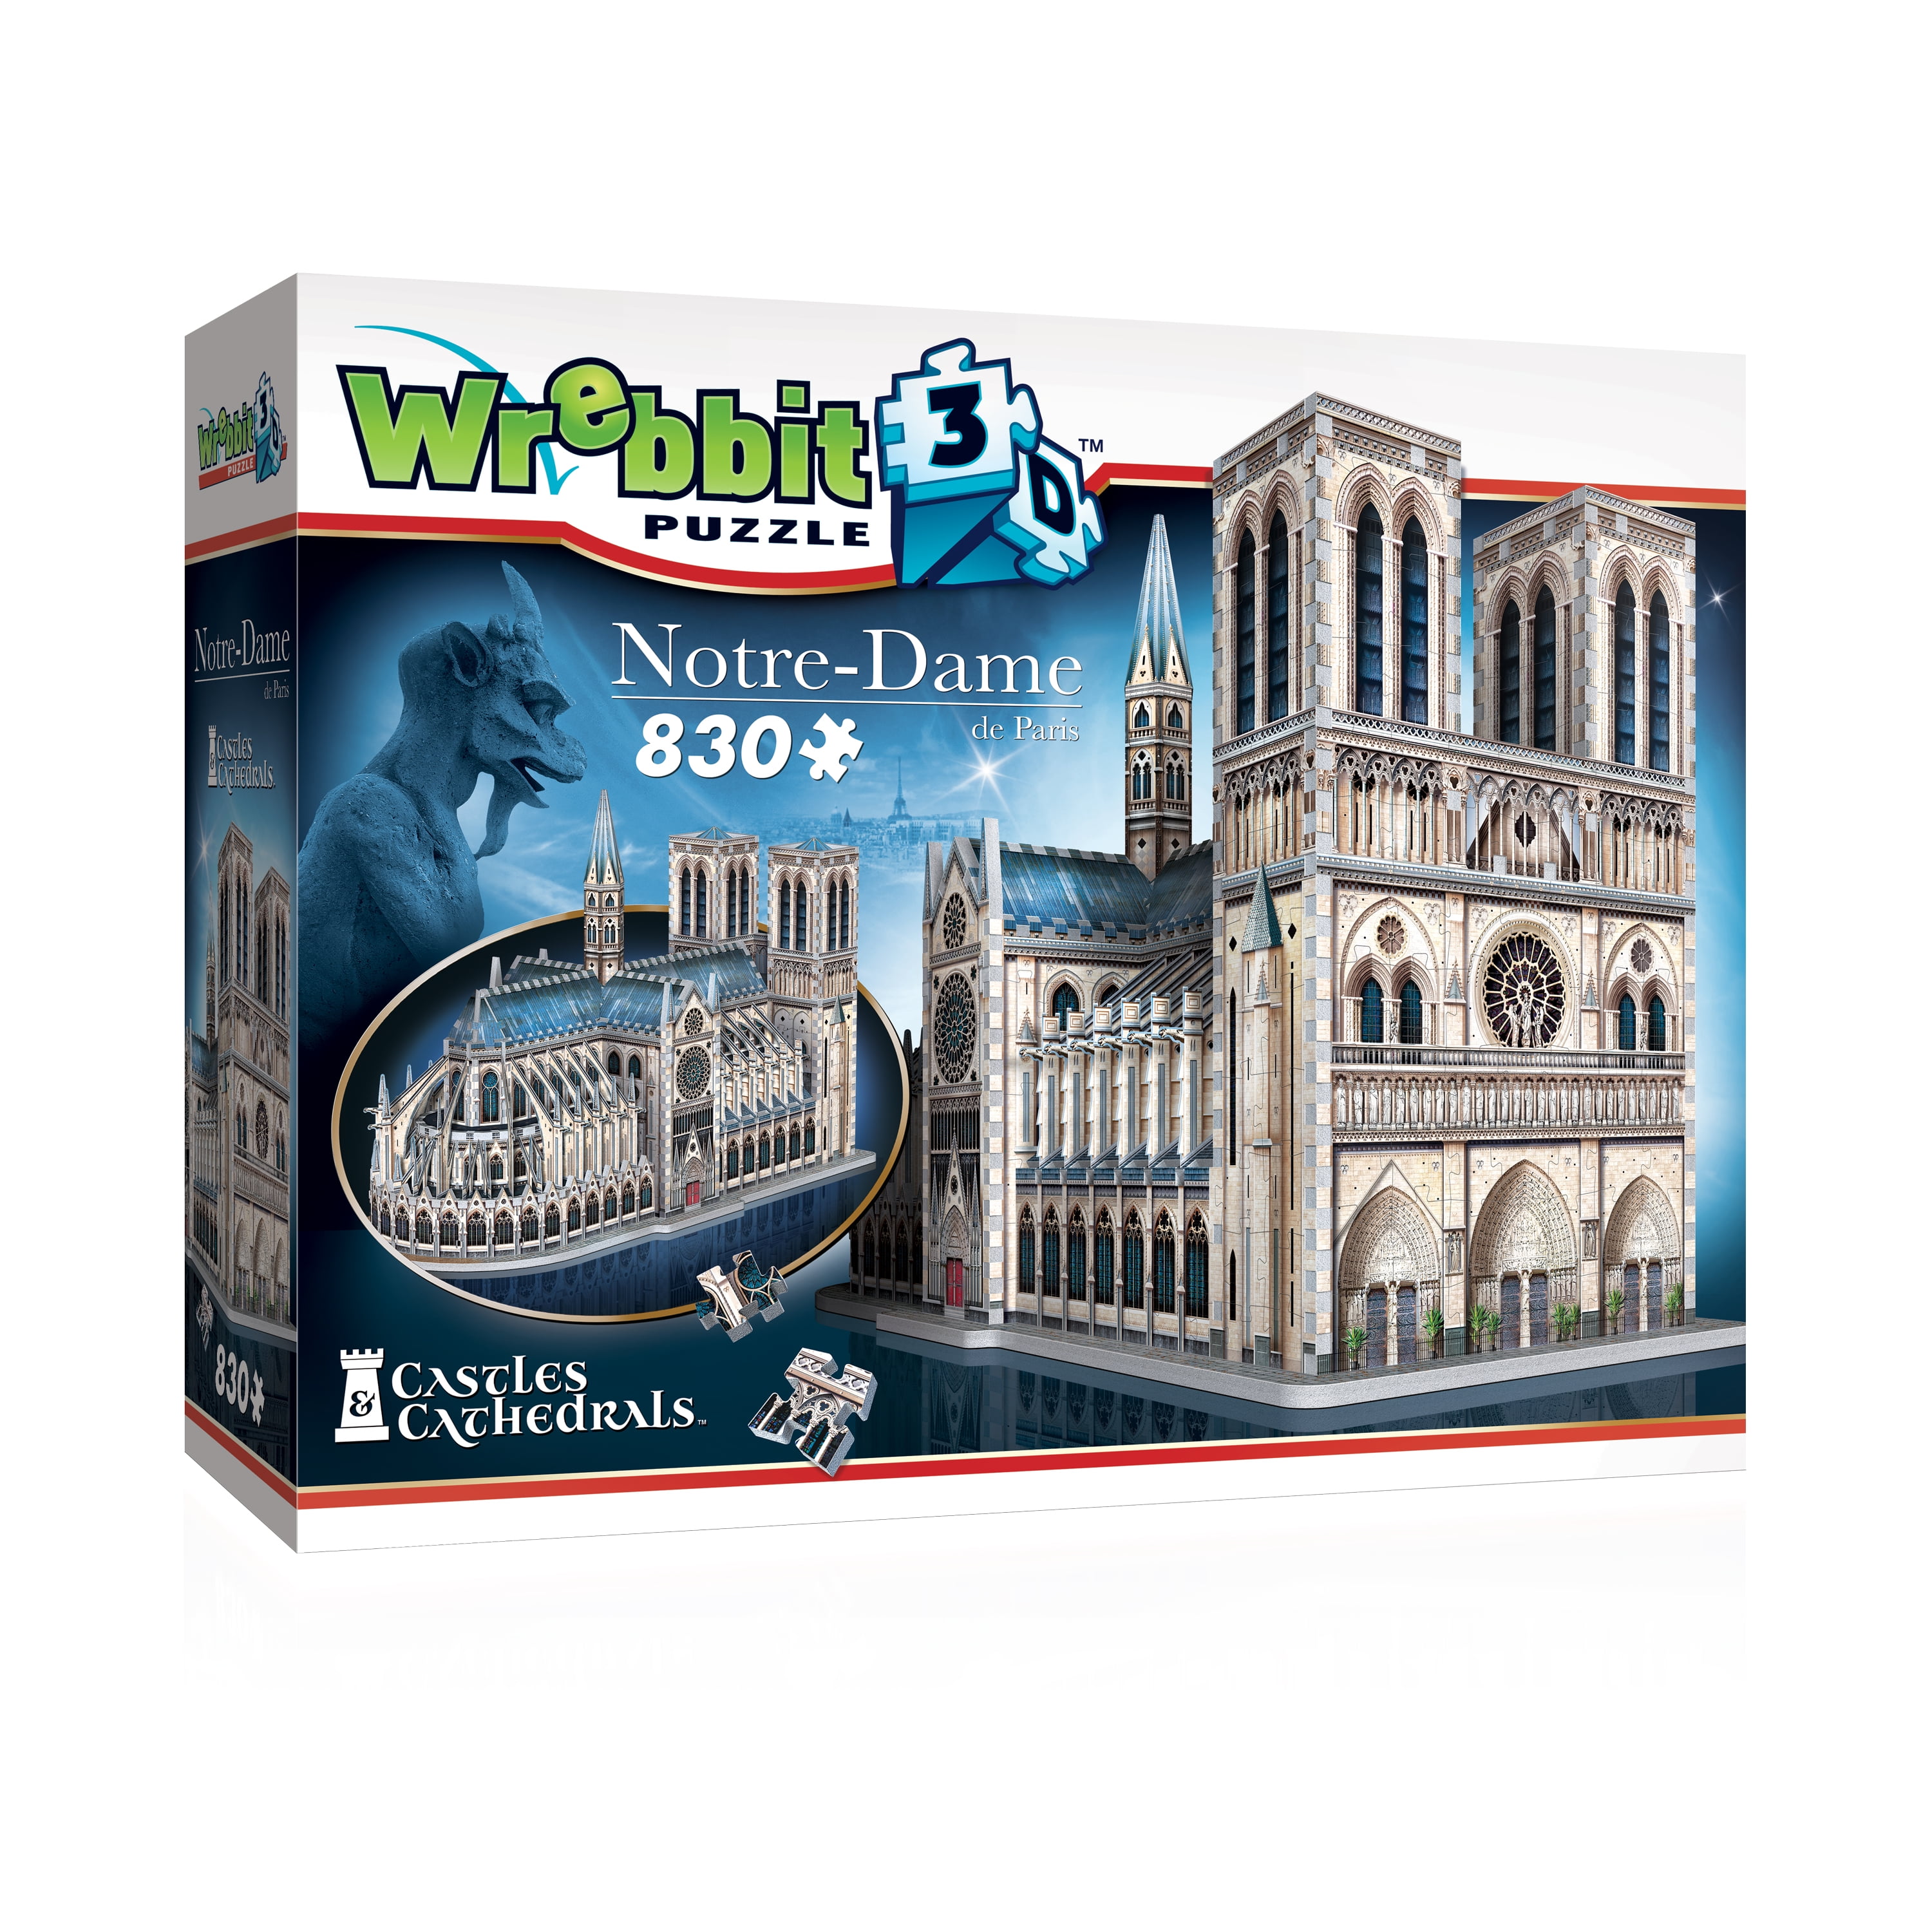 Wrebbit 3D - Notre-Dame de Paris 830 Piece 3D Jigsaw Puzzle